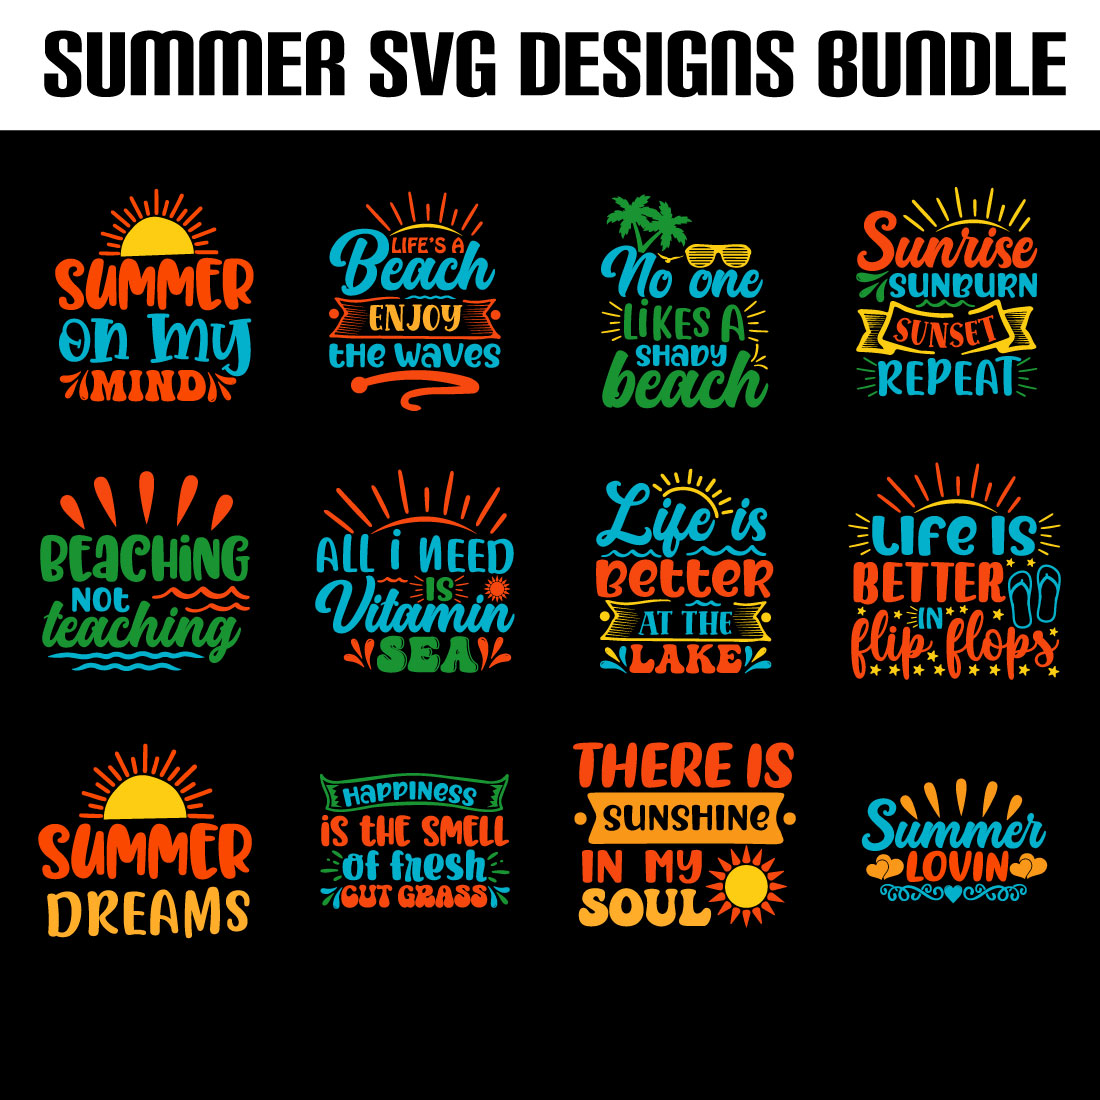 summer svg design bundle preview image.